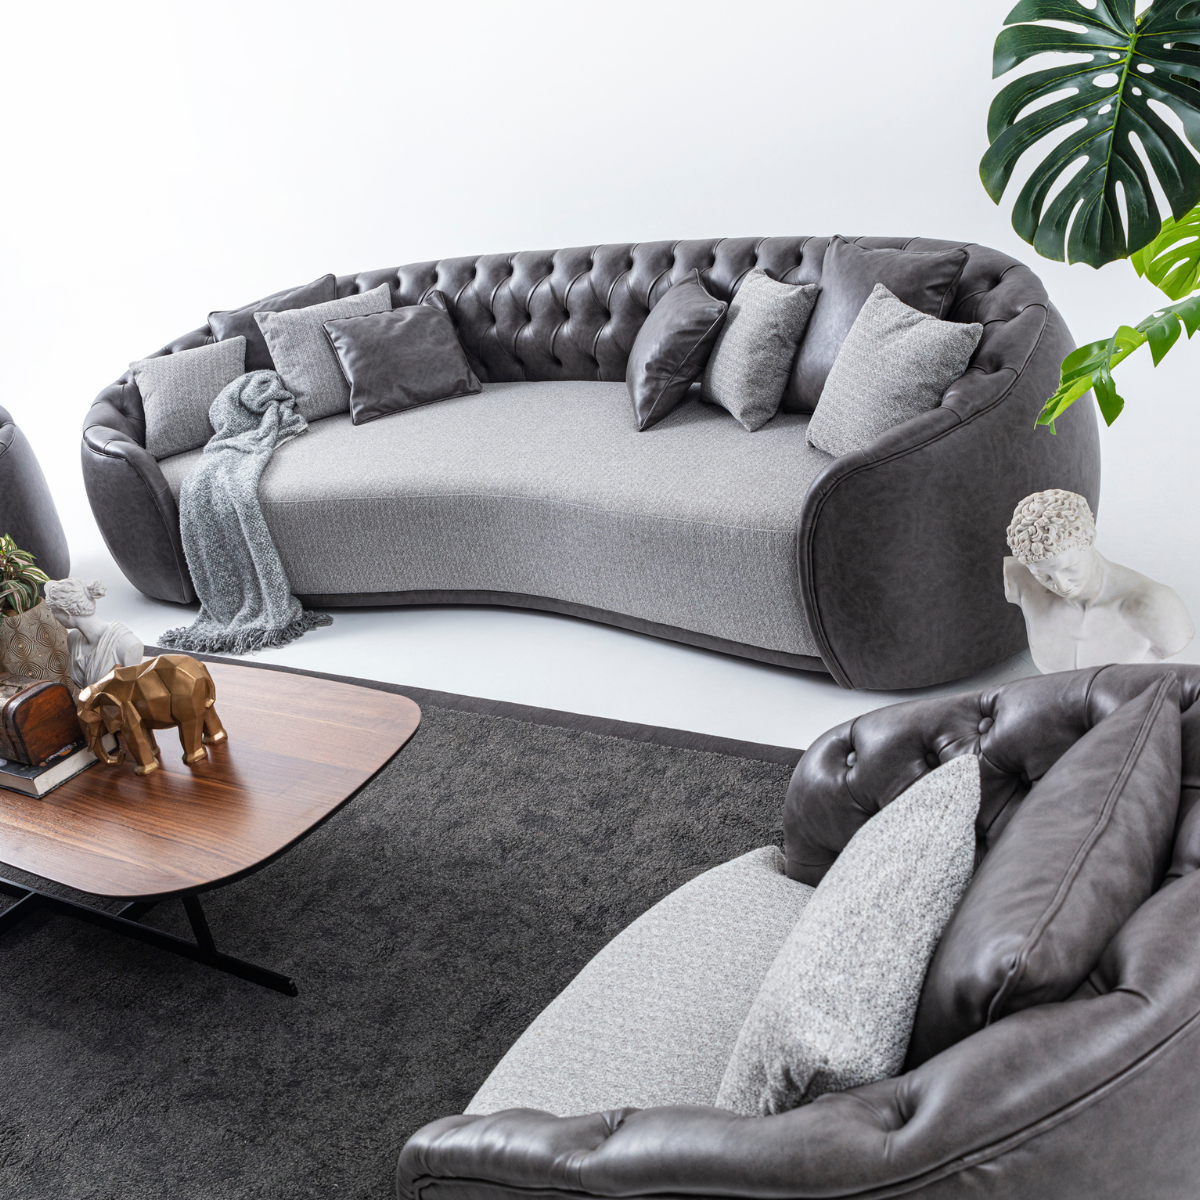 Canapea modernă  de lux Round Chester